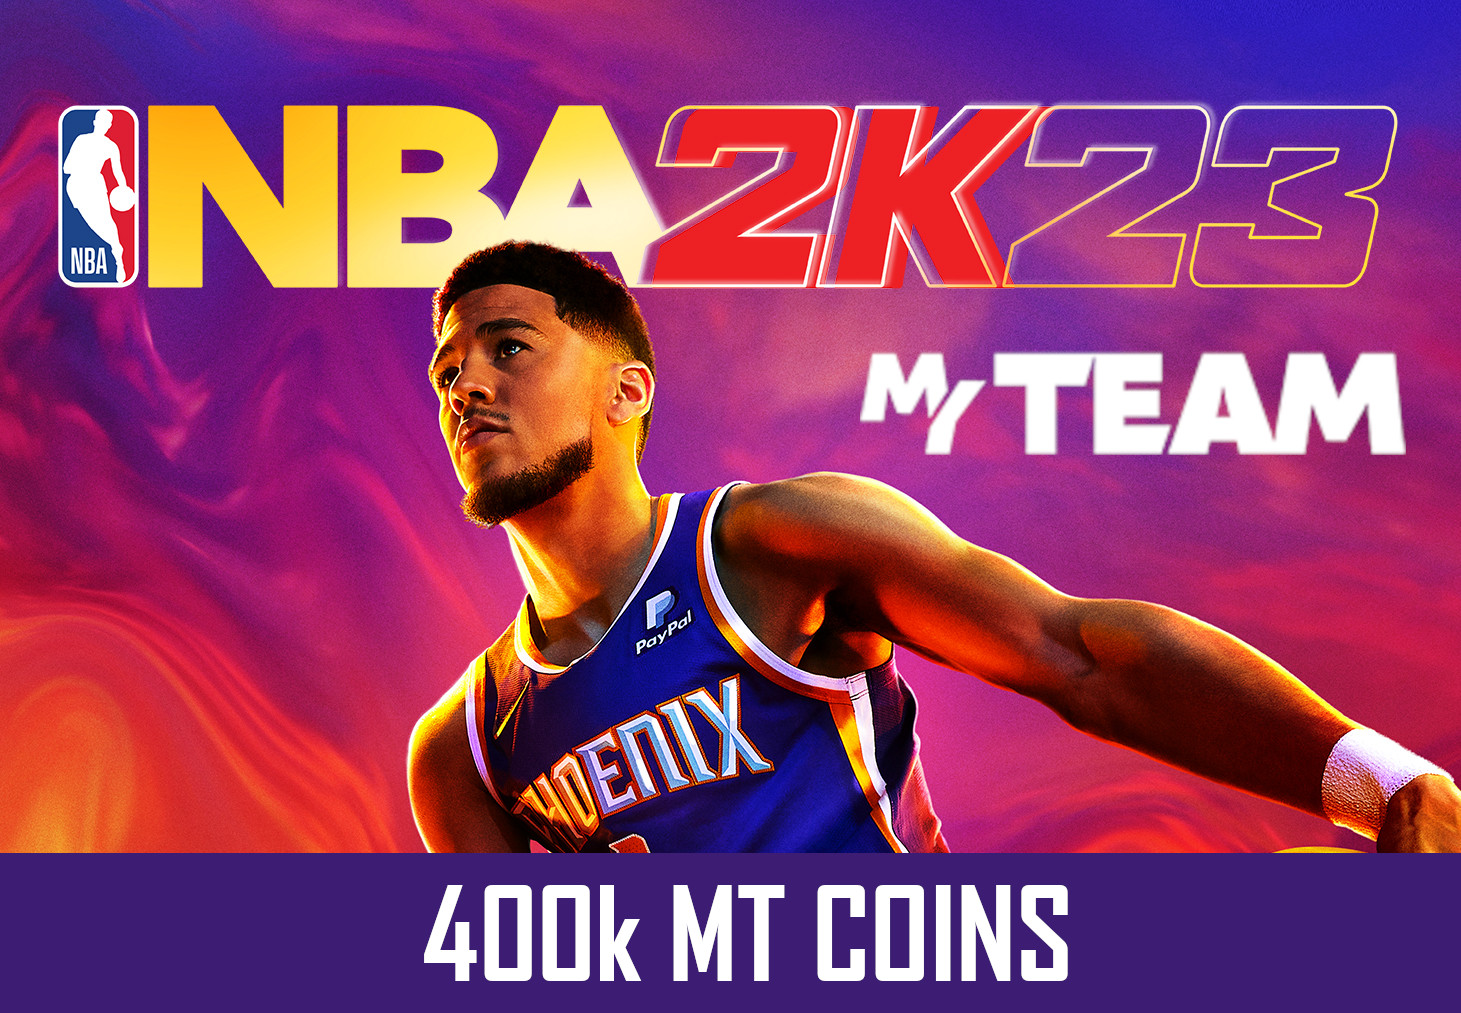 NBA 2K23 - 400k MT Coins - GLOBAL XBOX One/Series X,S